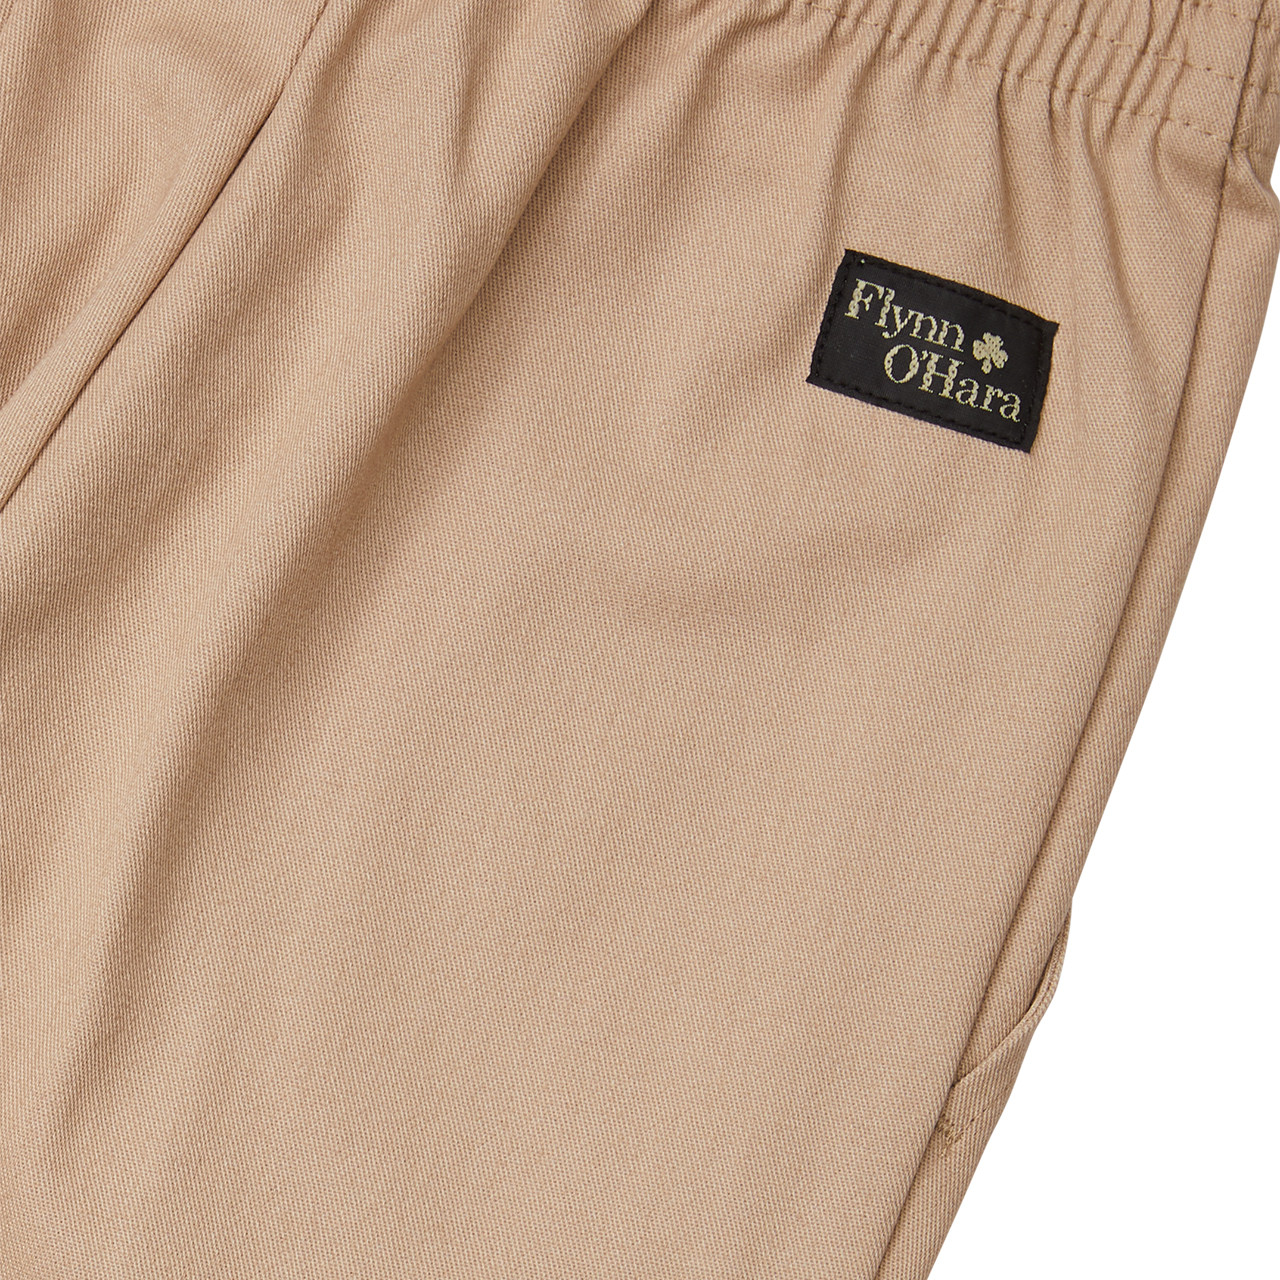 Pull-On Elastic Waist Pants [NJ281-PULL ON-KHAKI] - FlynnO'Hara Uniforms